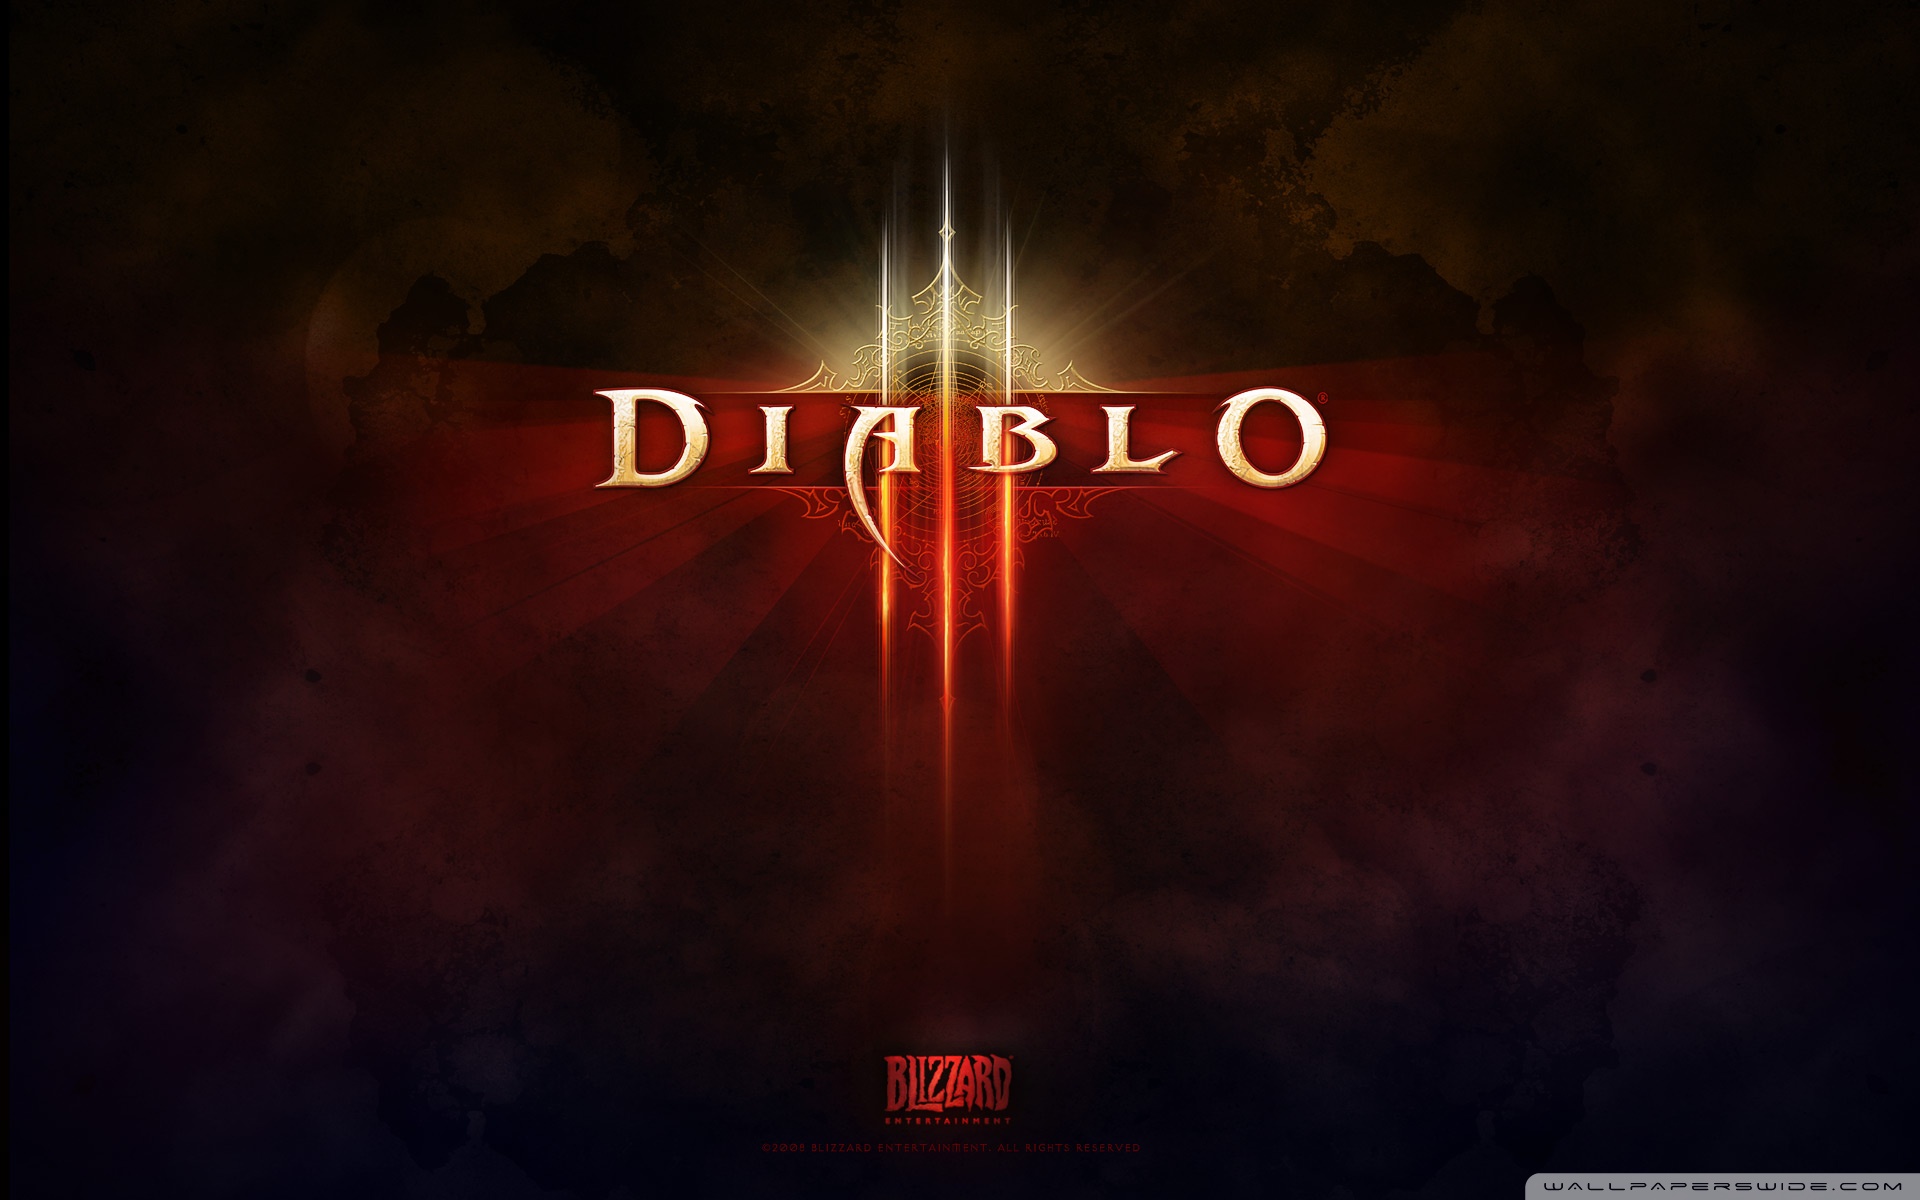 Free Download Diablo Iii Ultra Hd Desktop Background Wallpaper For 4k